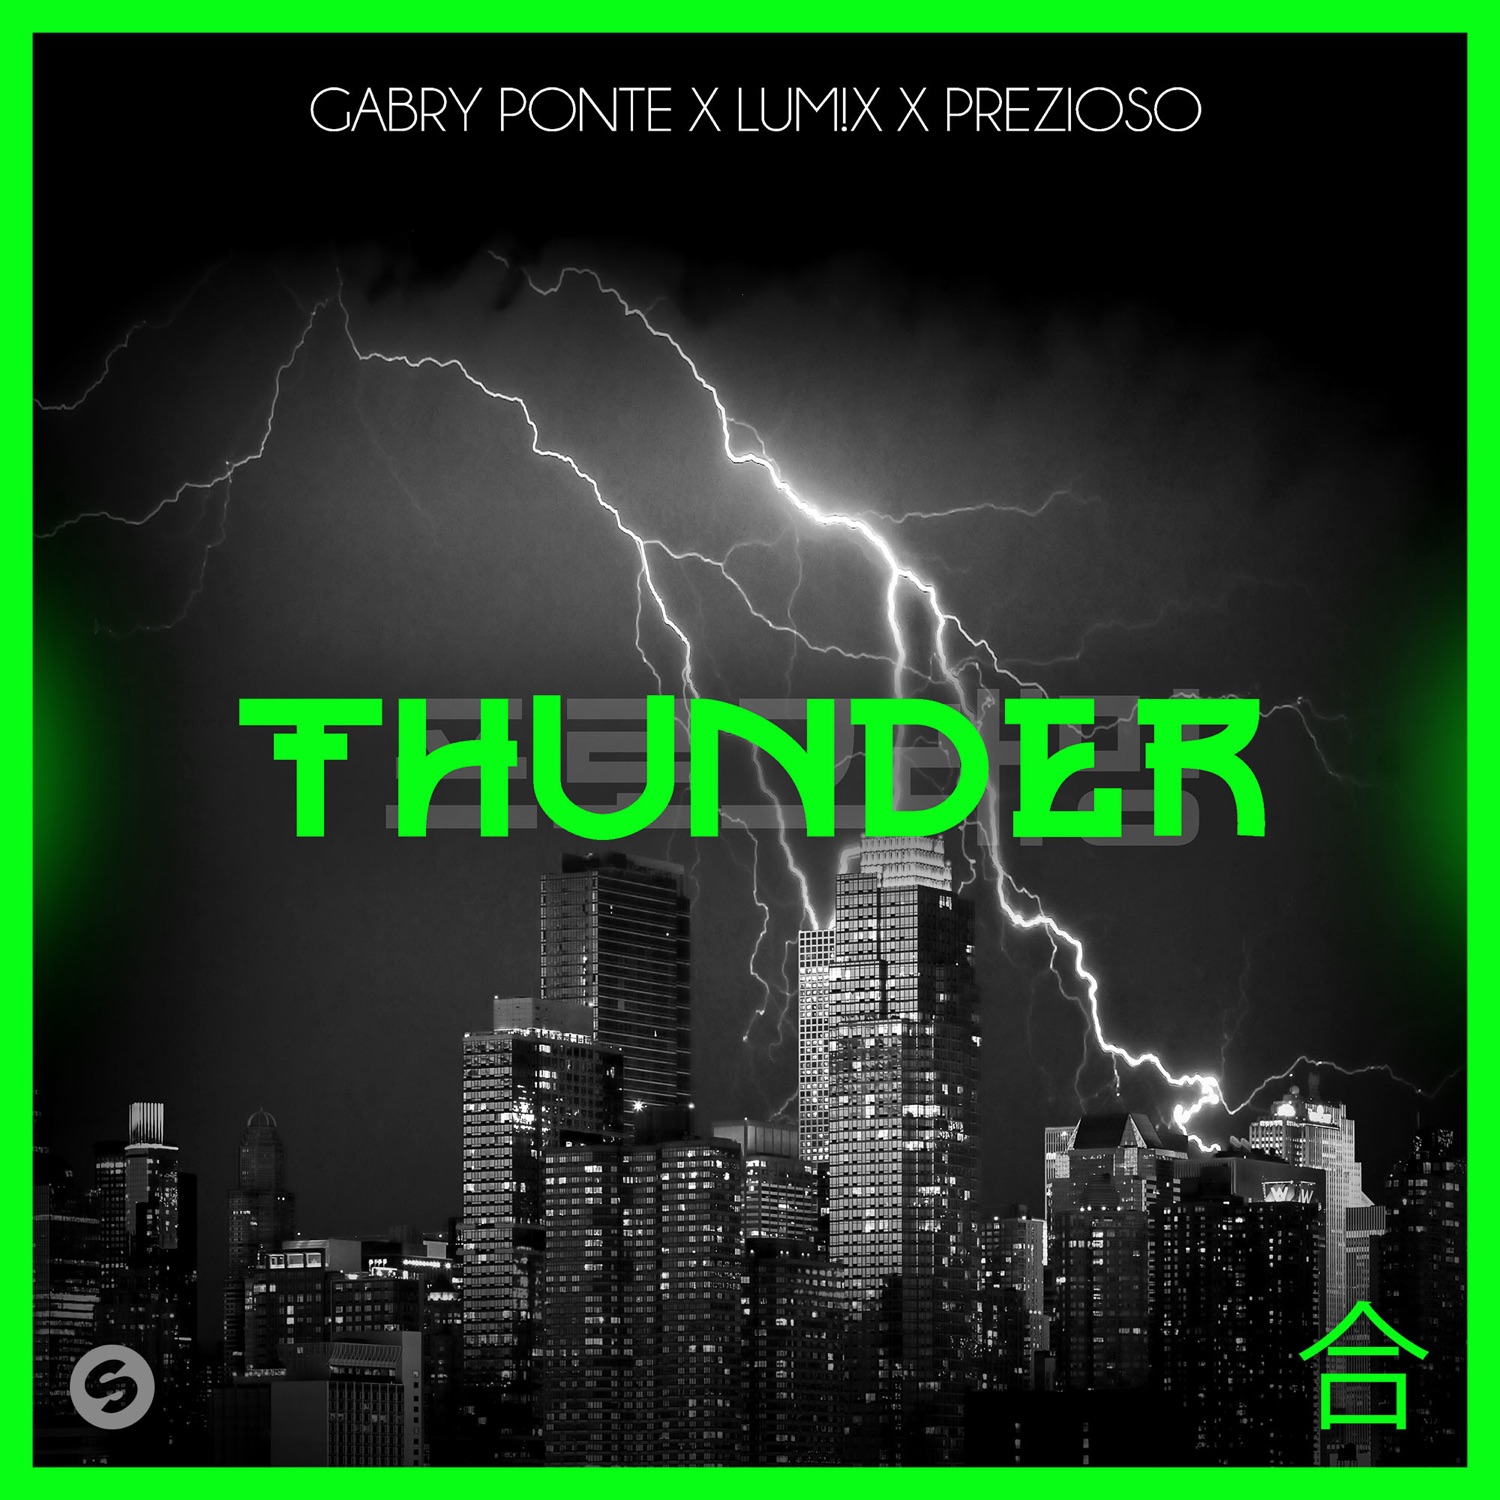 Art for Thunder by Gabry Ponte x LUM!X x Prezioso